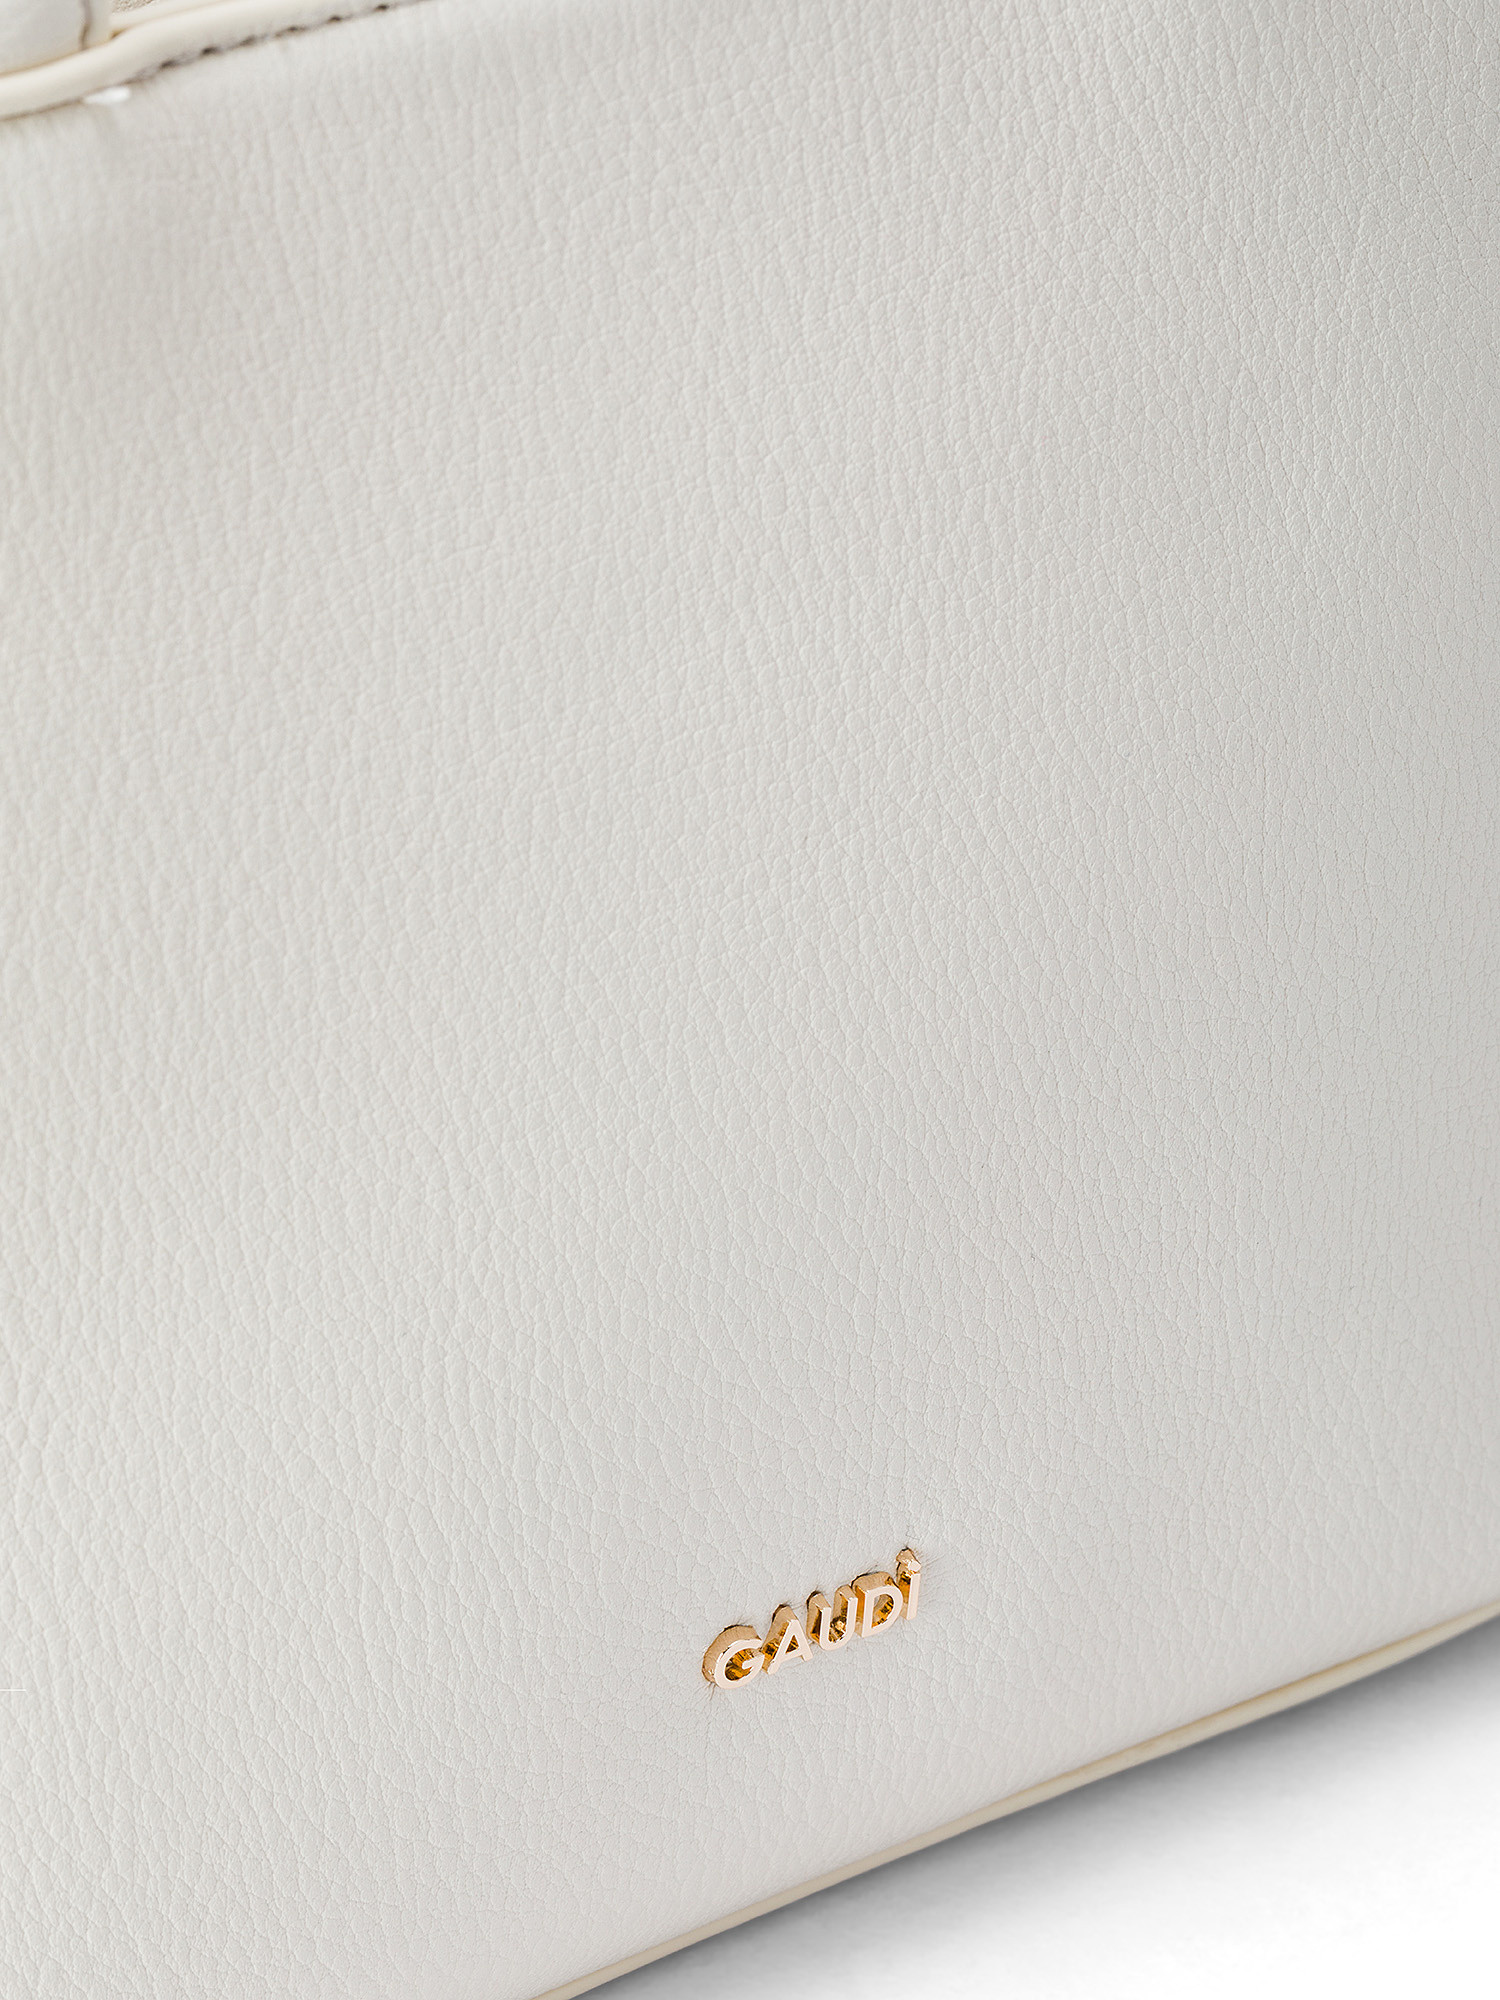 Gaudì - Raffia and imitation leather mini shopping bag, White, large image number 2